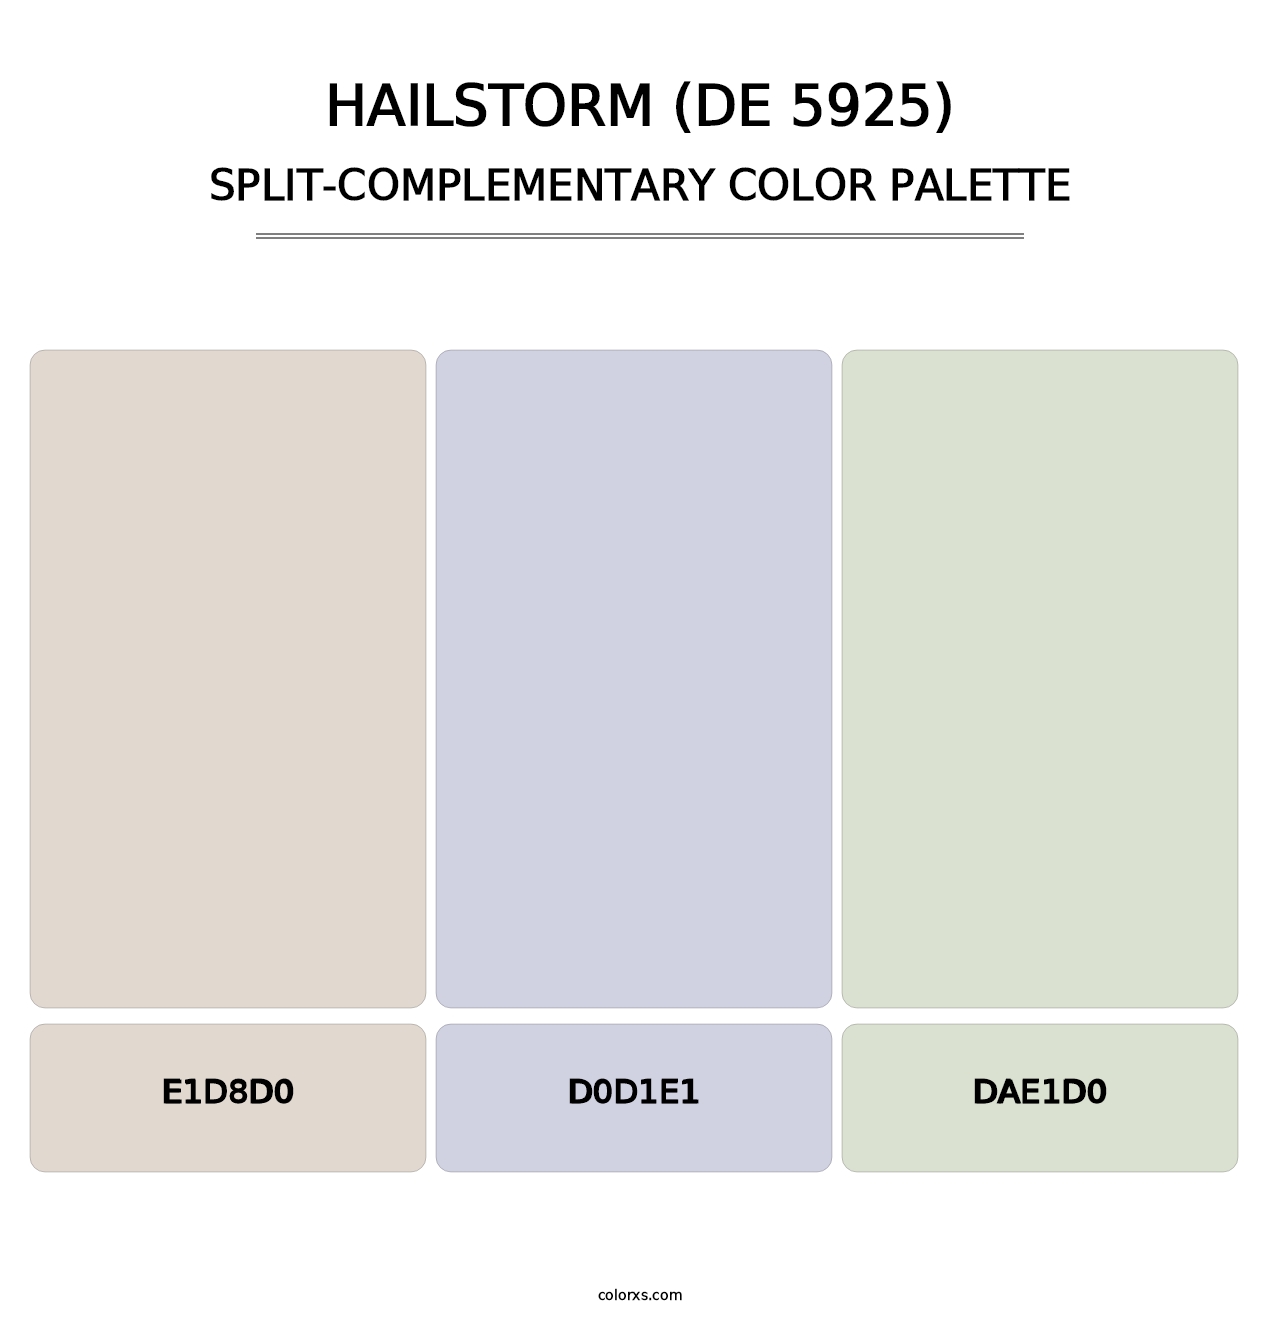 Hailstorm (DE 5925) - Split-Complementary Color Palette